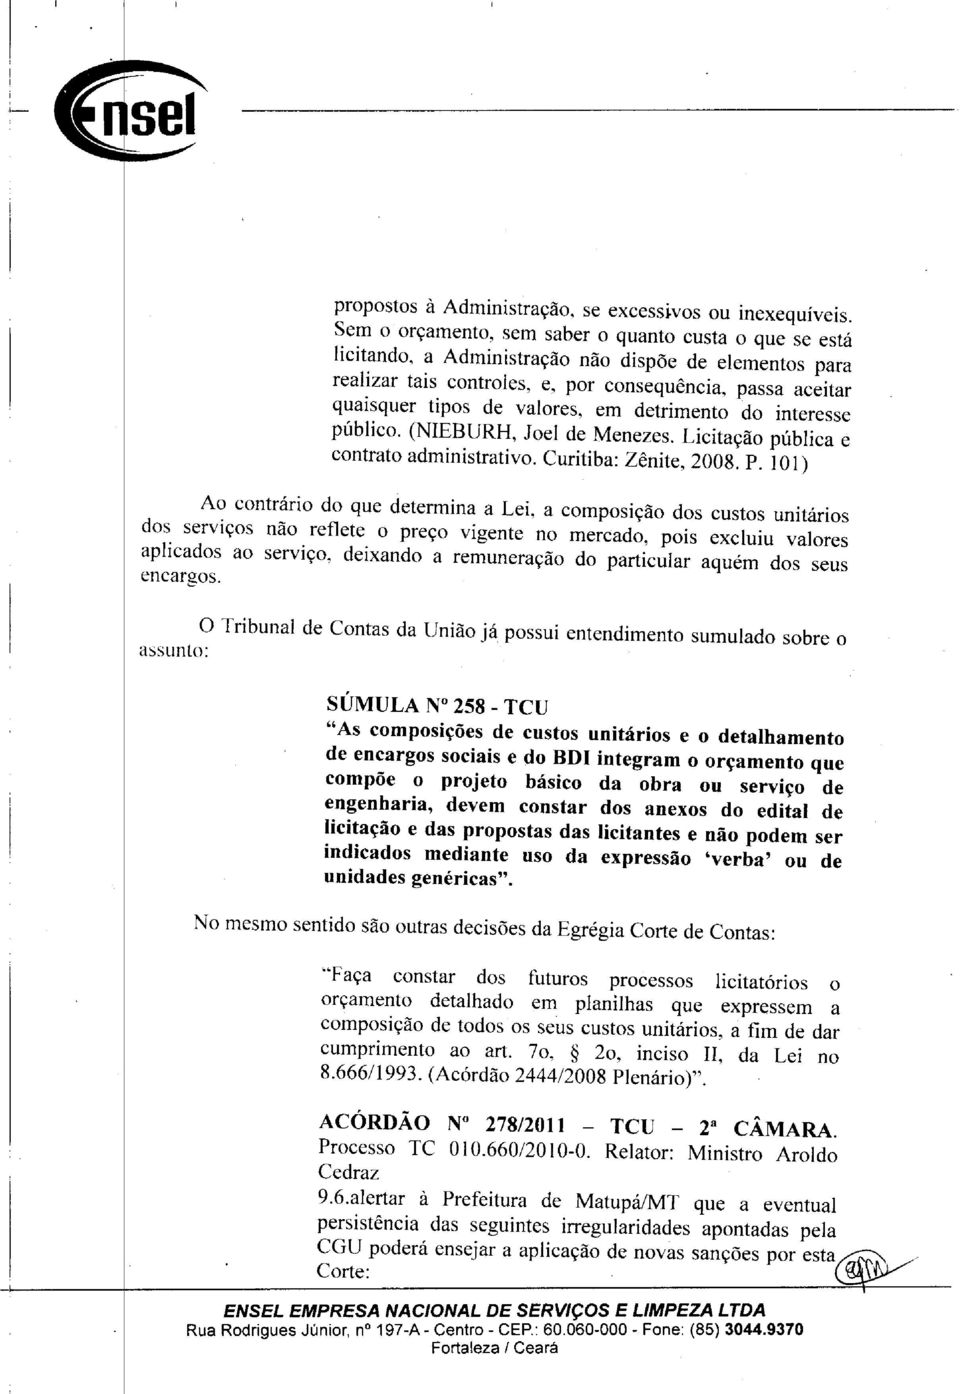 em detrimento do interesse público. (NIEBURH, Joel de Menezes. Licitação pública e contrato administrativo. Curitiba: Zênite, 2008. P.